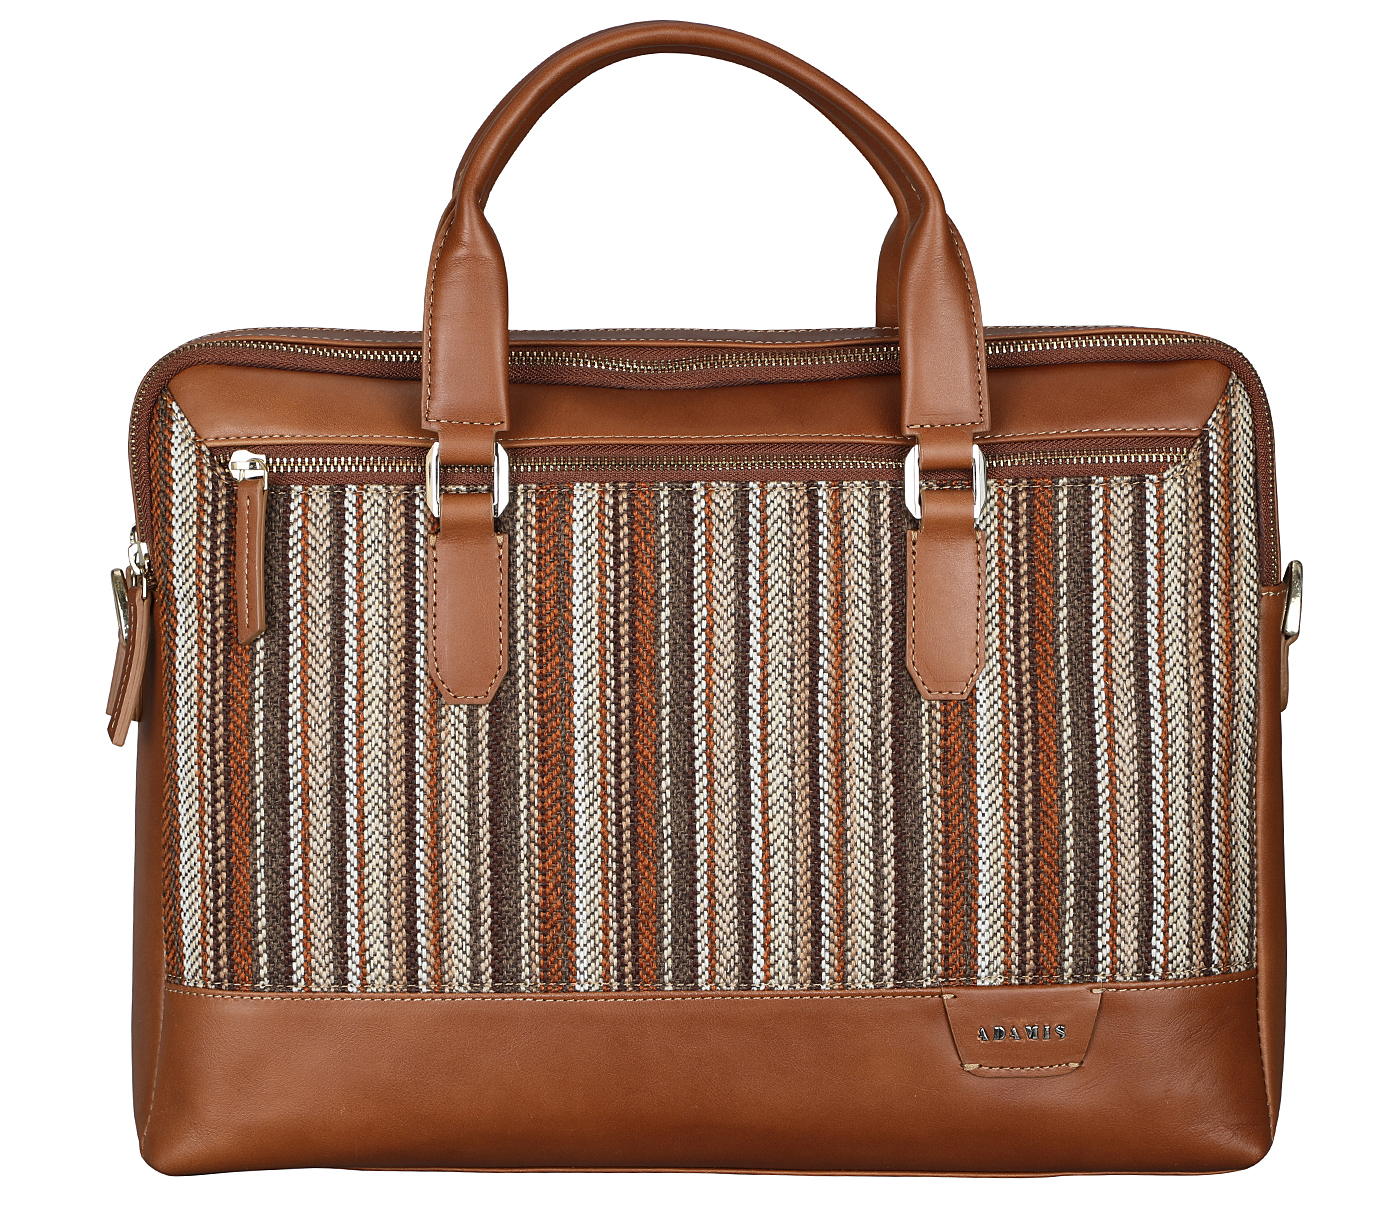 Portfolio / Laptop Bag-Alvaro-Laptop cum portfolio bag in Multi colored Stripes print fabric with Genuine Leather combination - Tan